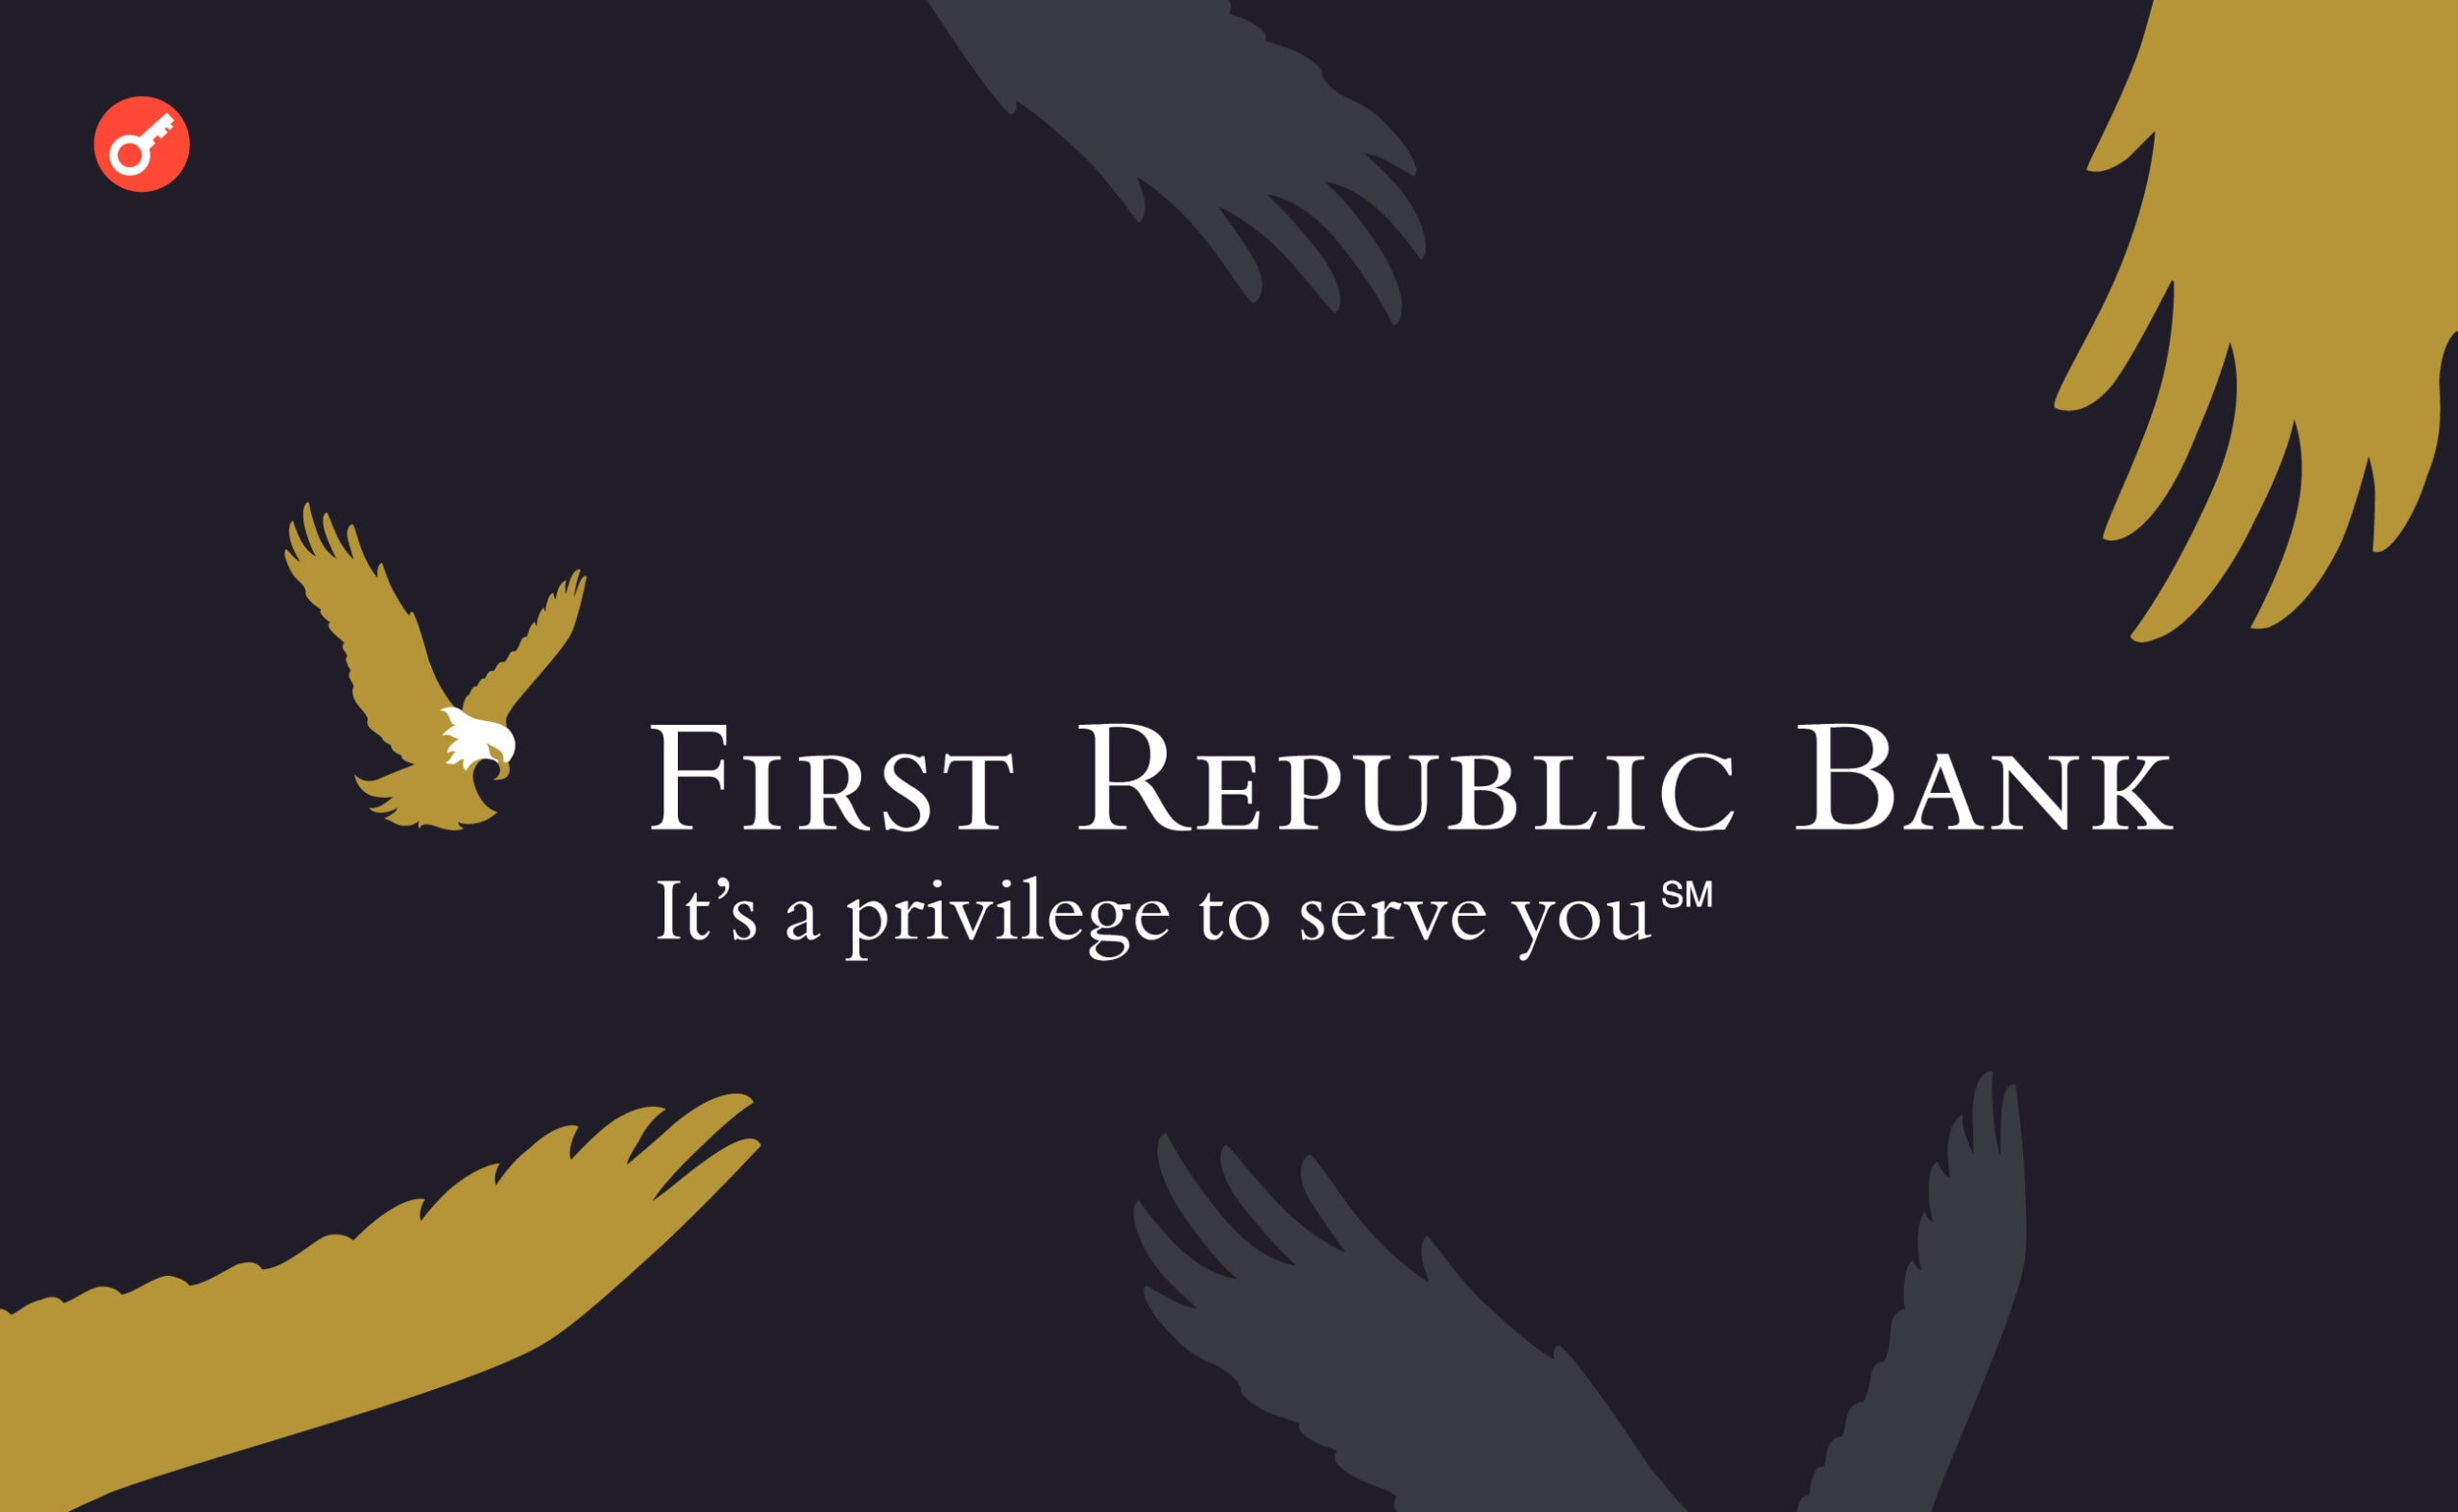 First Republic Bank загрожує конфіскація через фінансові труднощі. Головний колаж новини.